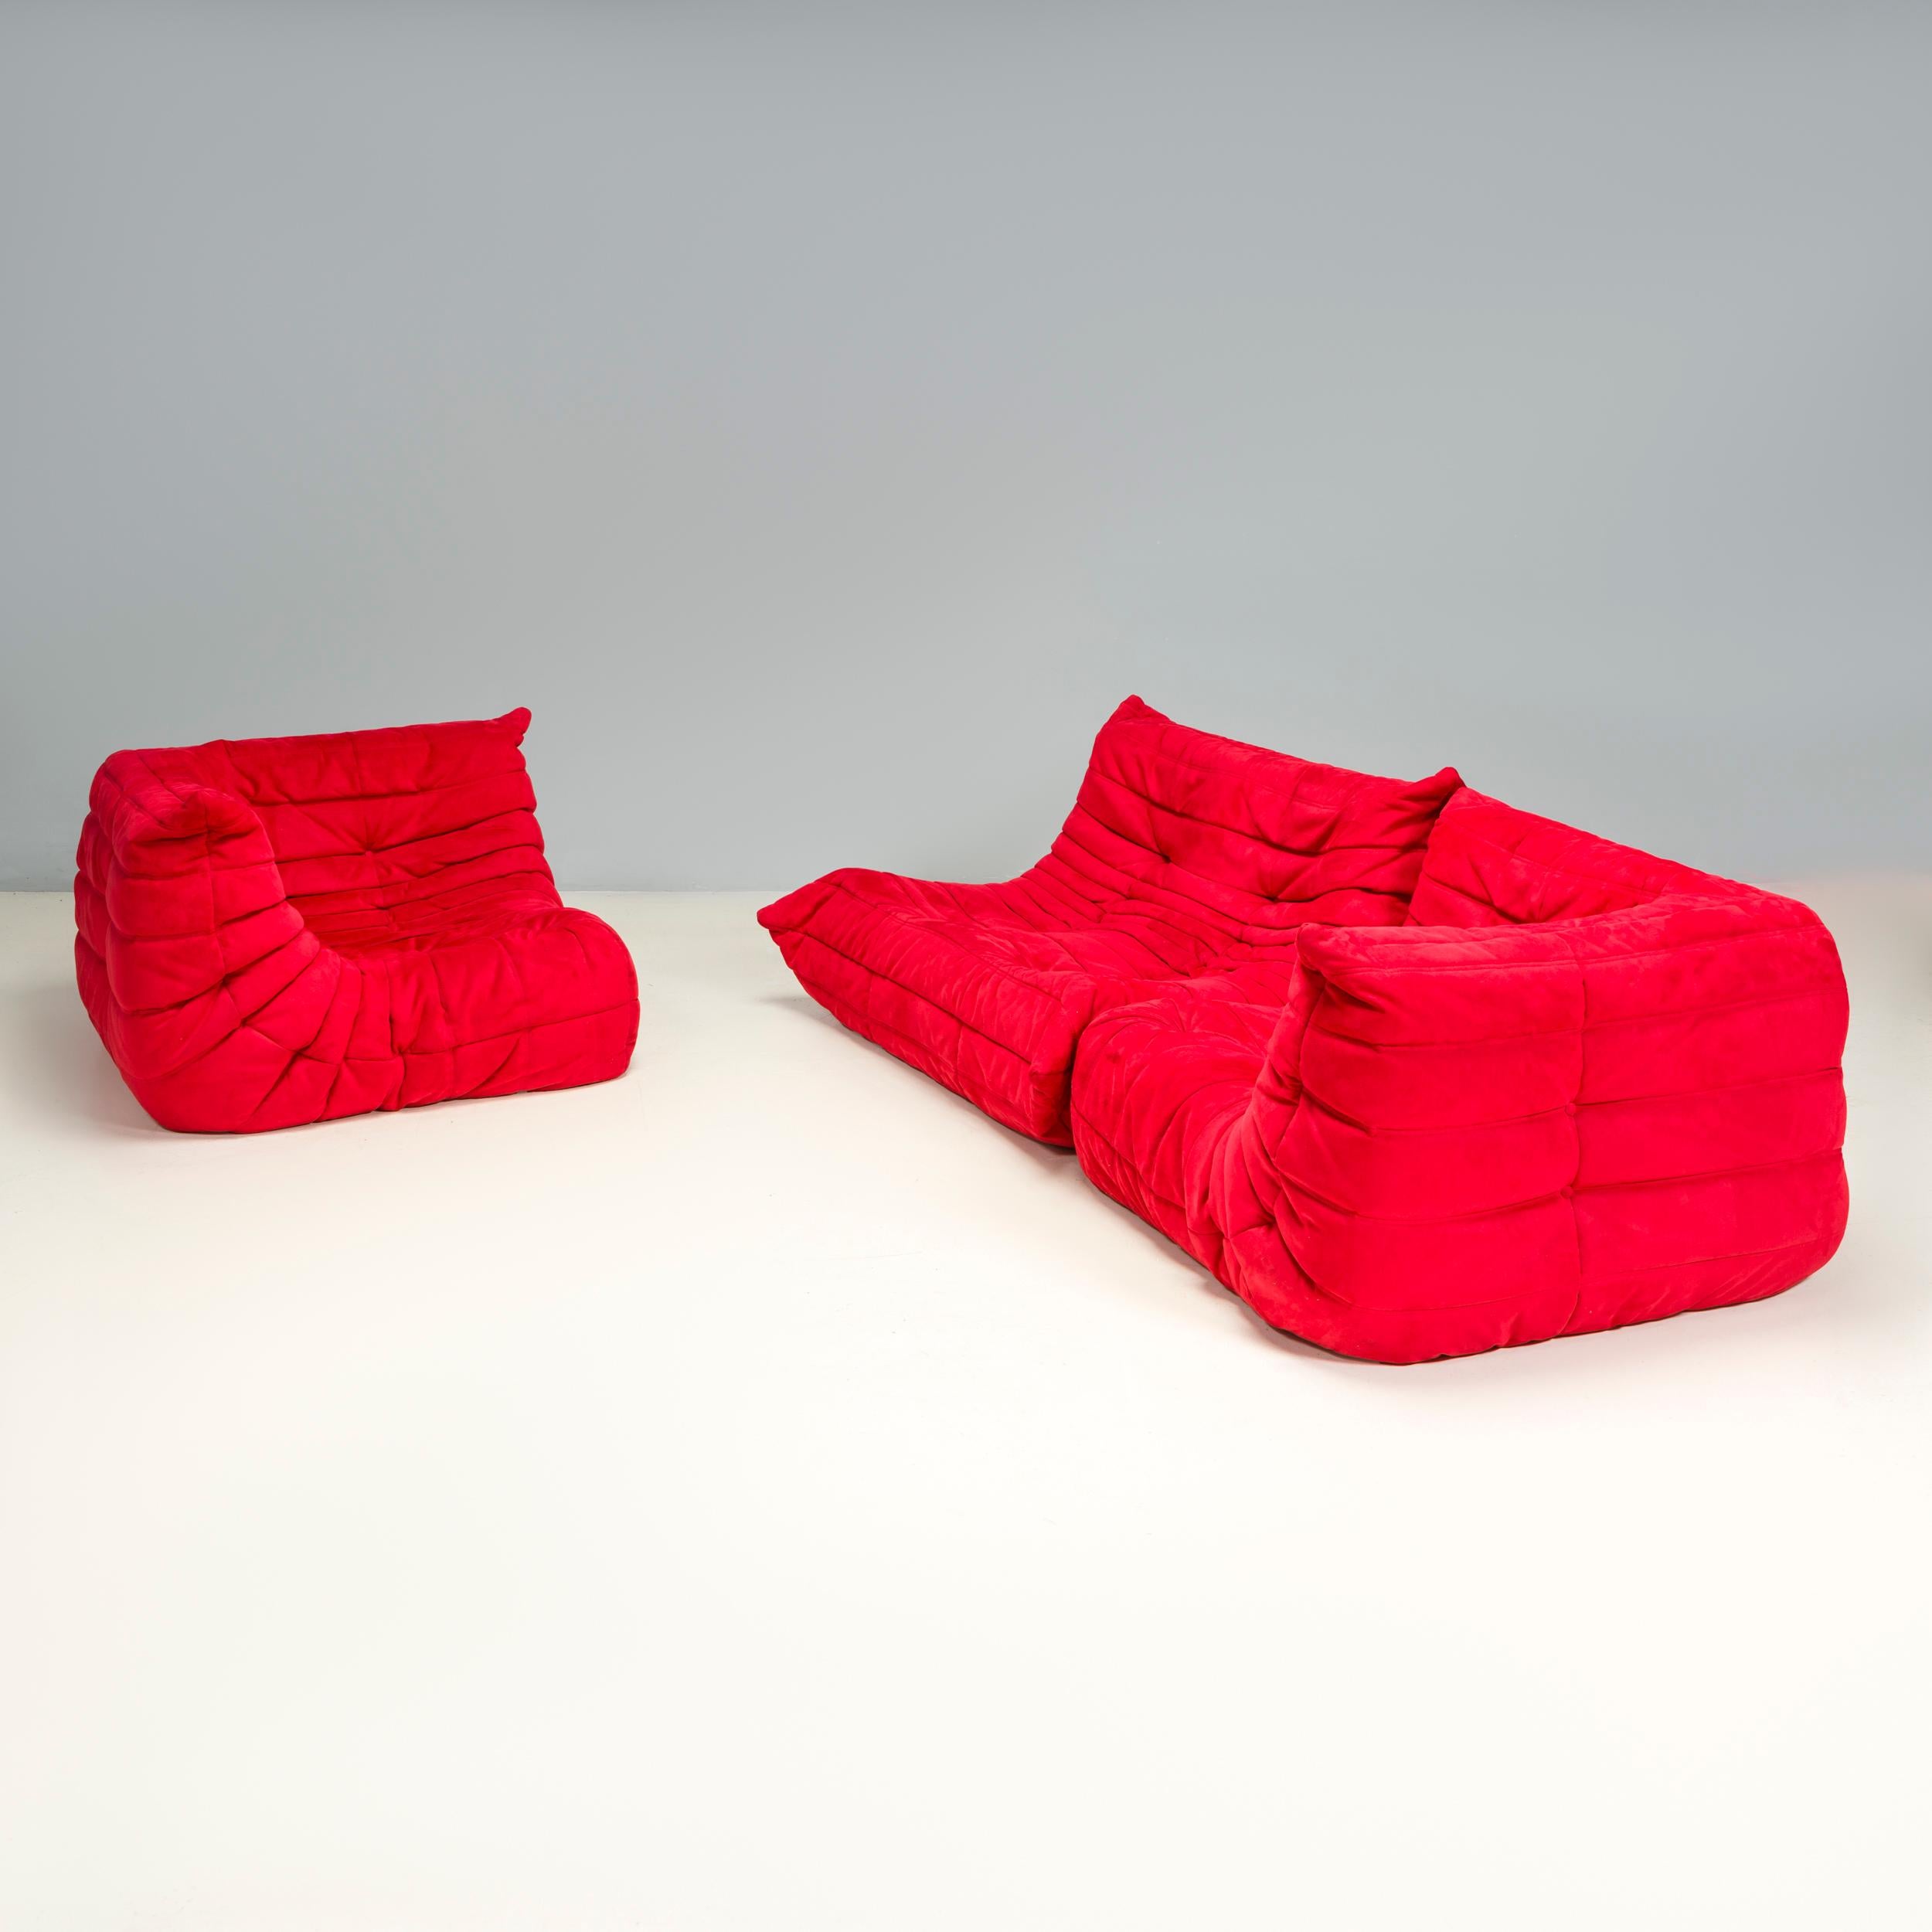 Das ikonische Sofa Togo, ursprünglich von Michel Ducaroy für Ligne Roset im Jahr 1973 entworfen, ist zu einem Designklassiker geworden.

Dieses dreiteilige modulare Set ist unglaublich vielseitig und kann zu einem größeren Ecksofa konfiguriert oder